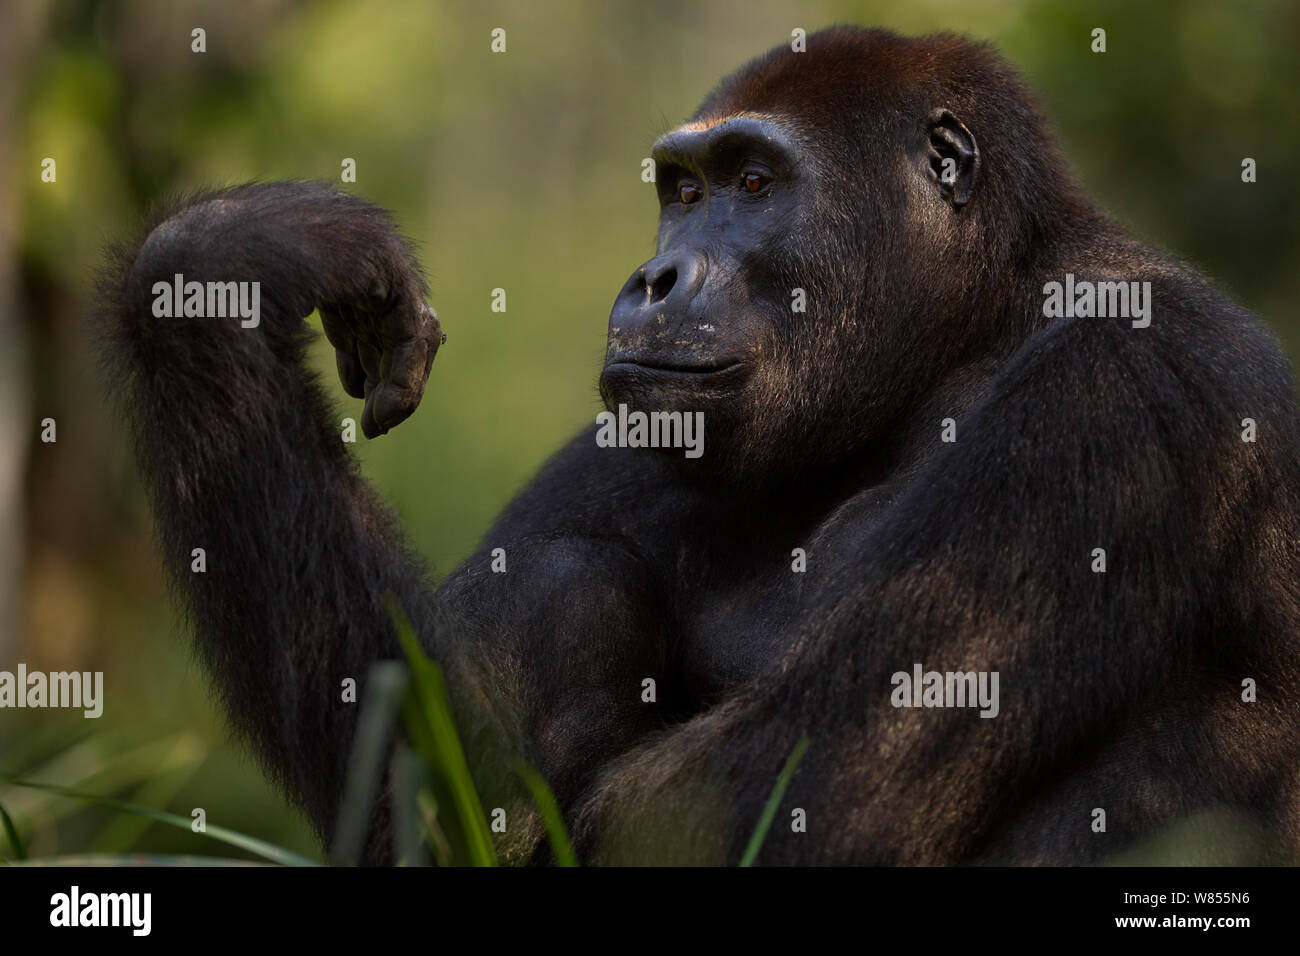 Gorille de plaine de l'ouest (Gorilla gorilla gorilla) mâle sub-adulte Kunga' 'âgés de 13 ans à la recherche de sa main, Bai Hokou, Spécial forêt dense de Dzanga Sangha, République centrafricaine. Décembre 2011. Banque D'Images